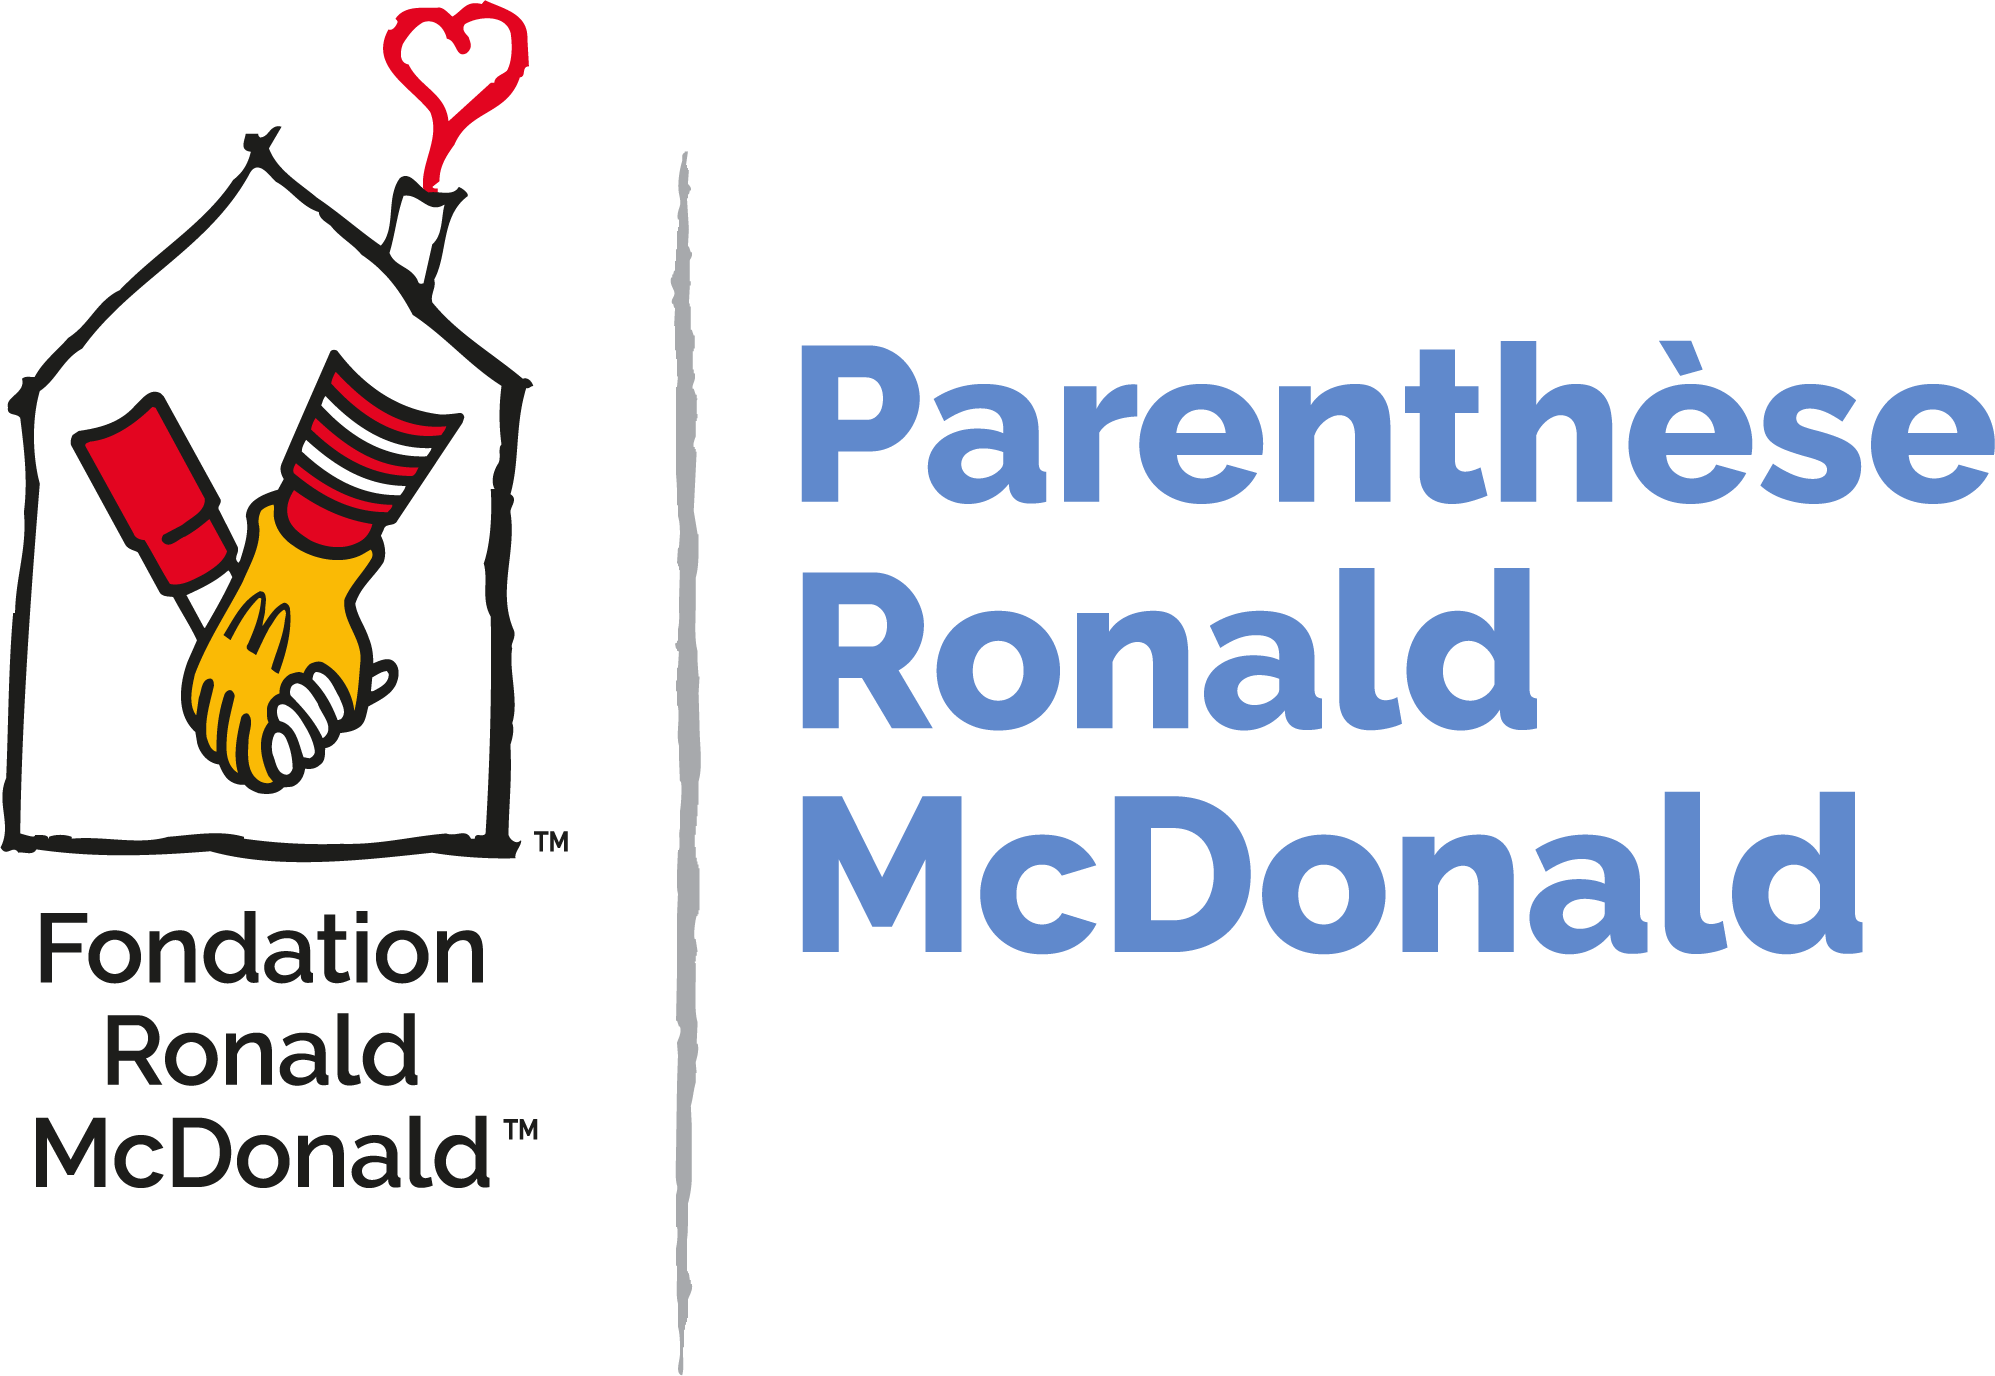 Les Parenthèses Ronald McDonald accueillent les familles des enfants hospitalisés